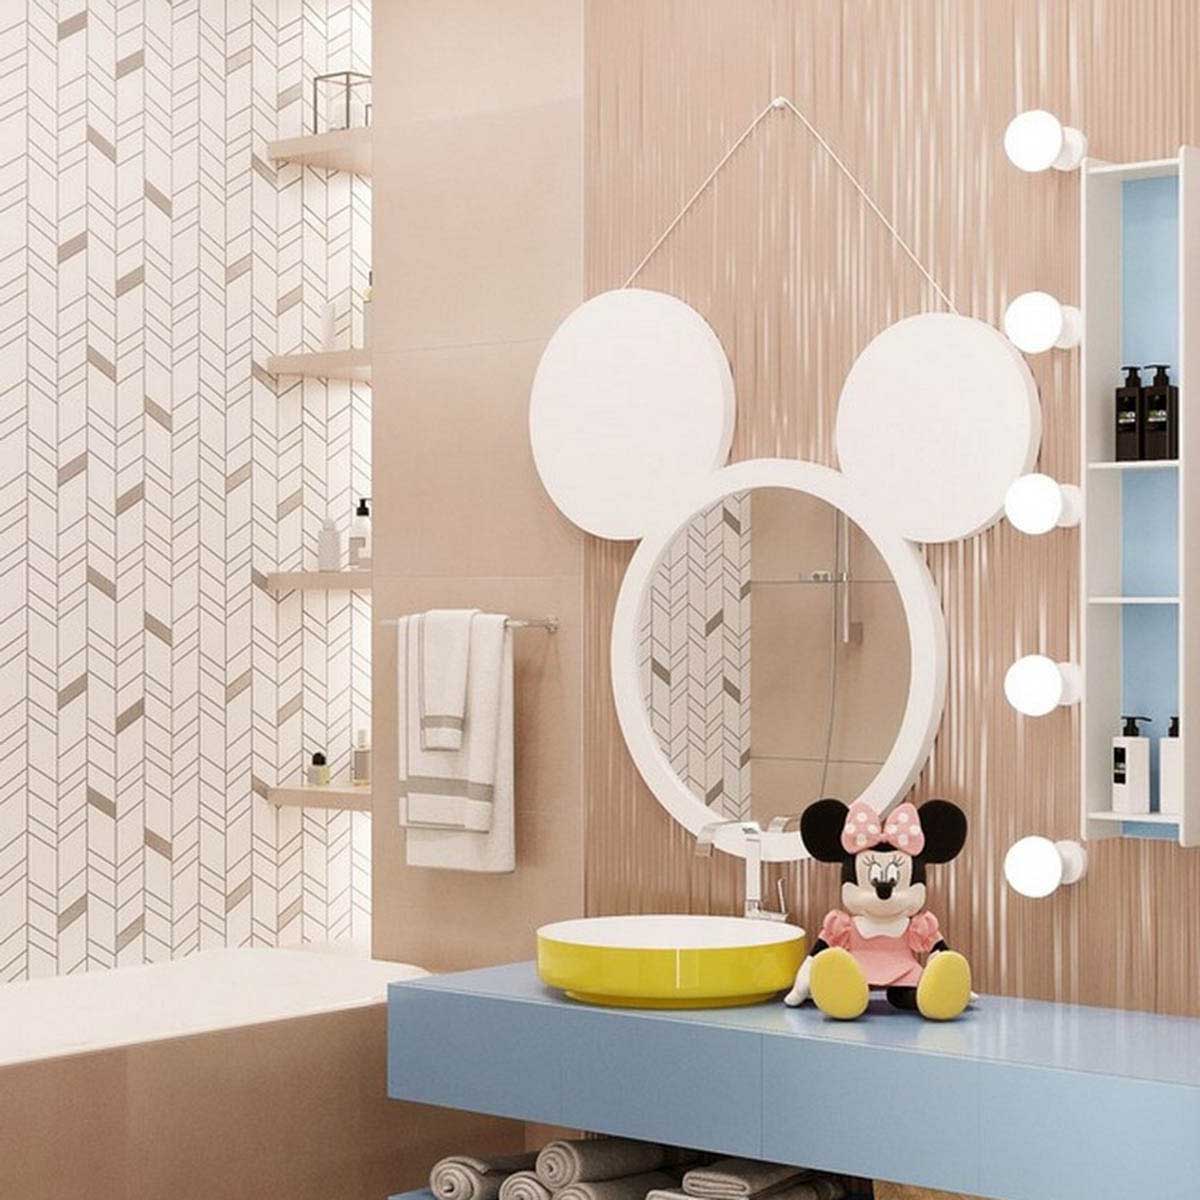 Phòng tắm Disney mơ ước của nhiều bạn nhỏ. Nguồn: Kidsbedroomideas